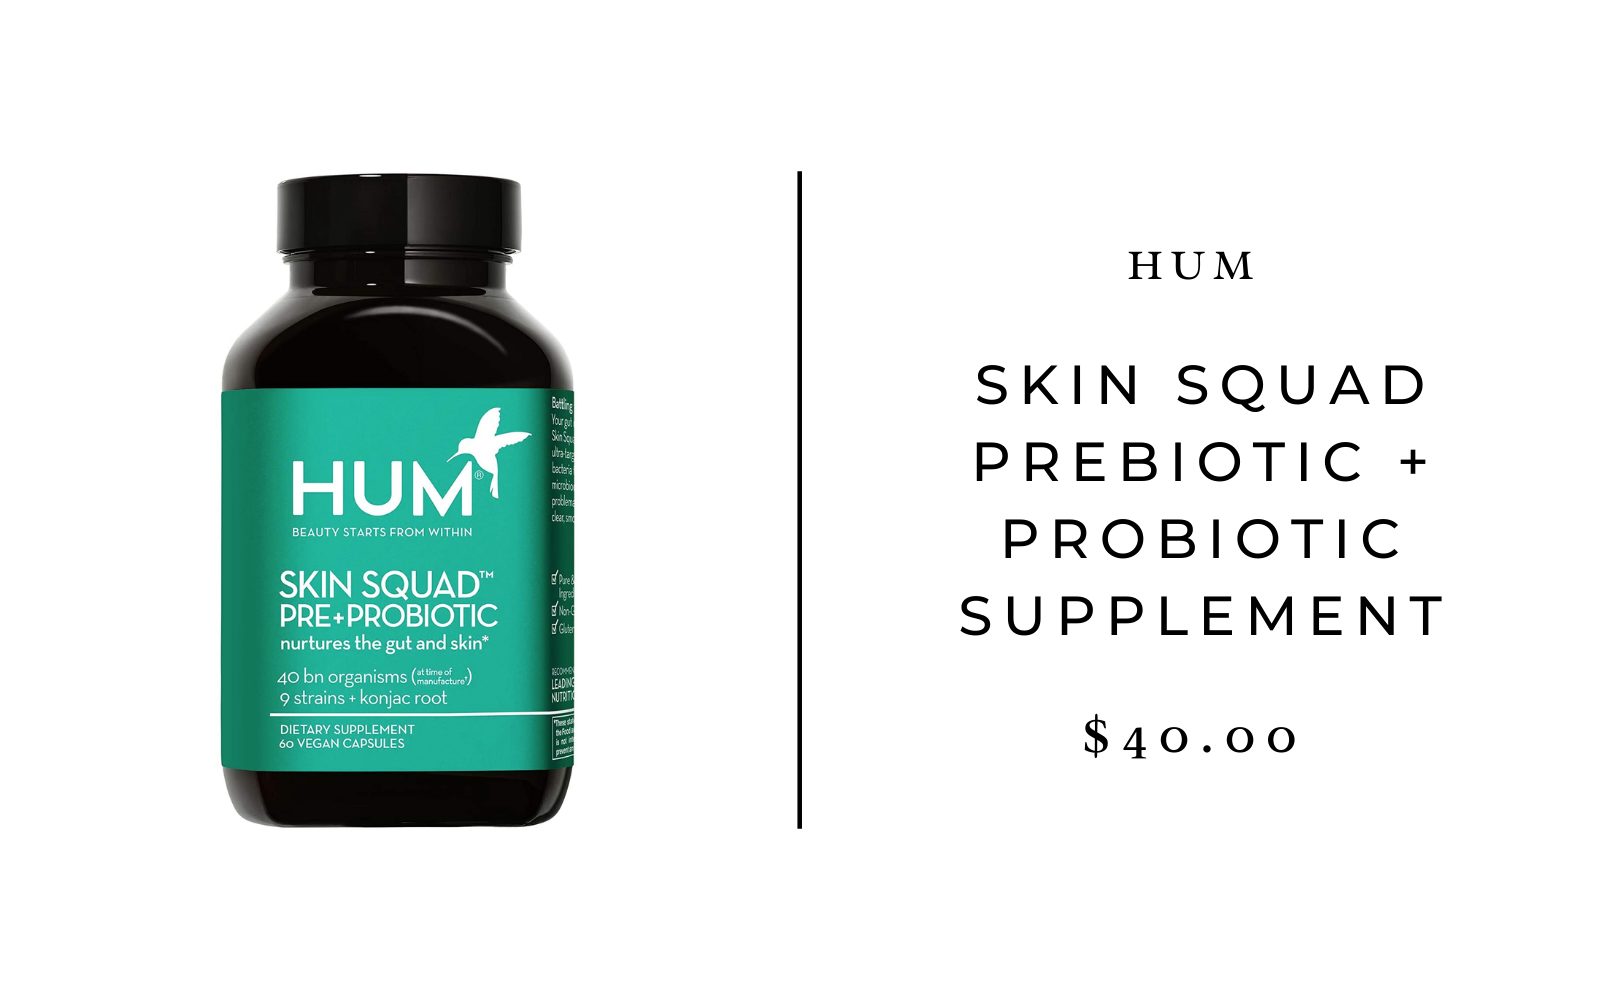 HUM Skin Squad Prebiotic + Probiotic Supplement